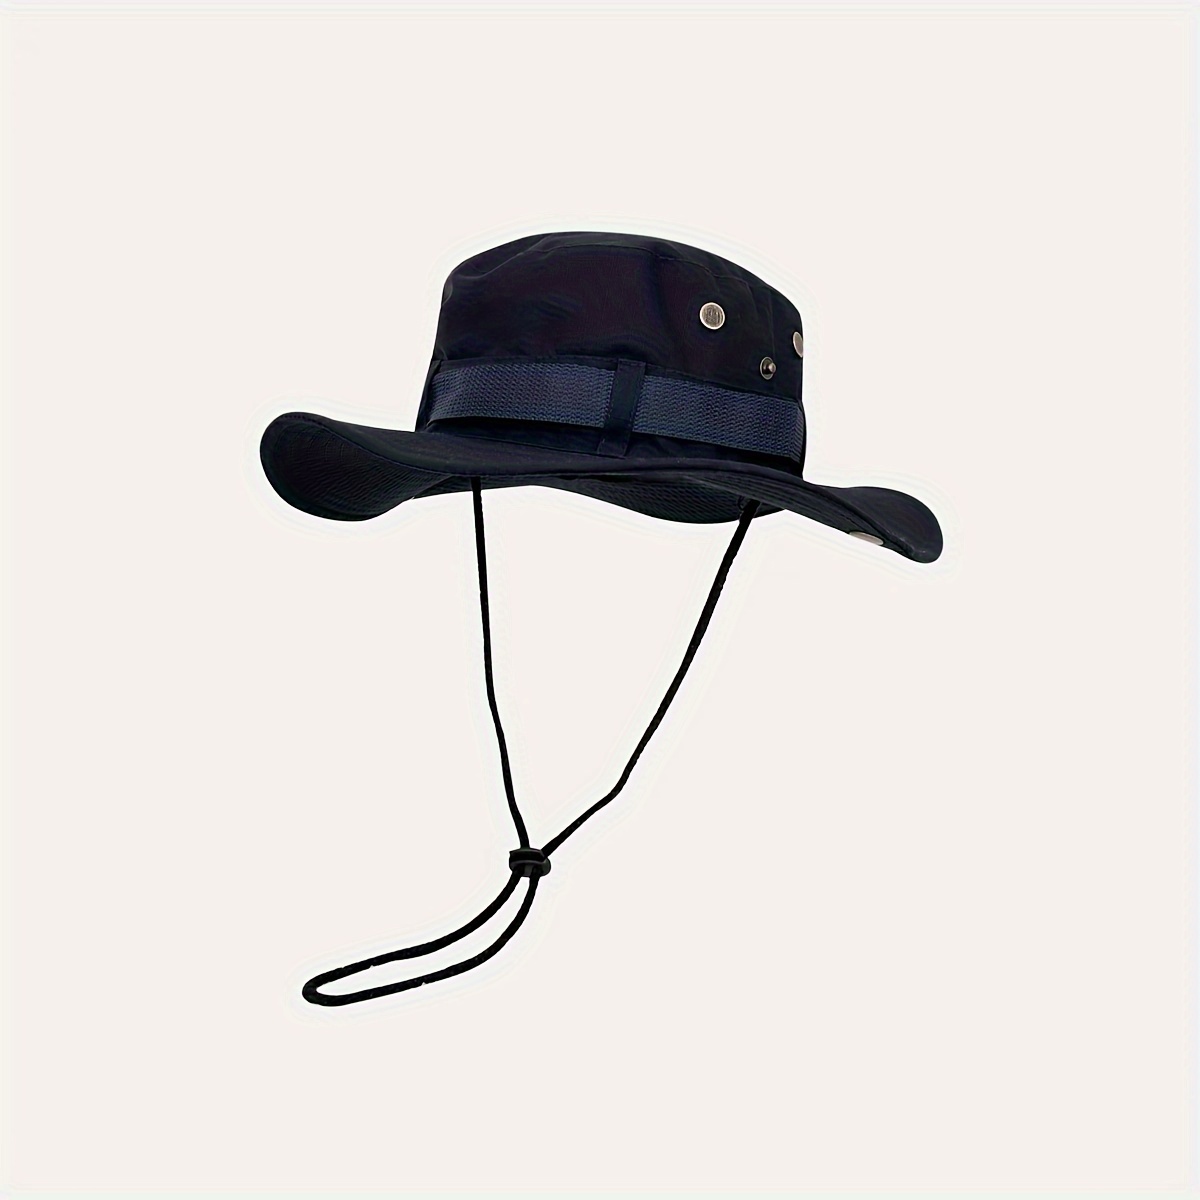 Fishing Hat Boonie Hat Beach Hat, Camping Hat, Gardening Hat, Outdoor Hat, Floppy Hat For Men & Women